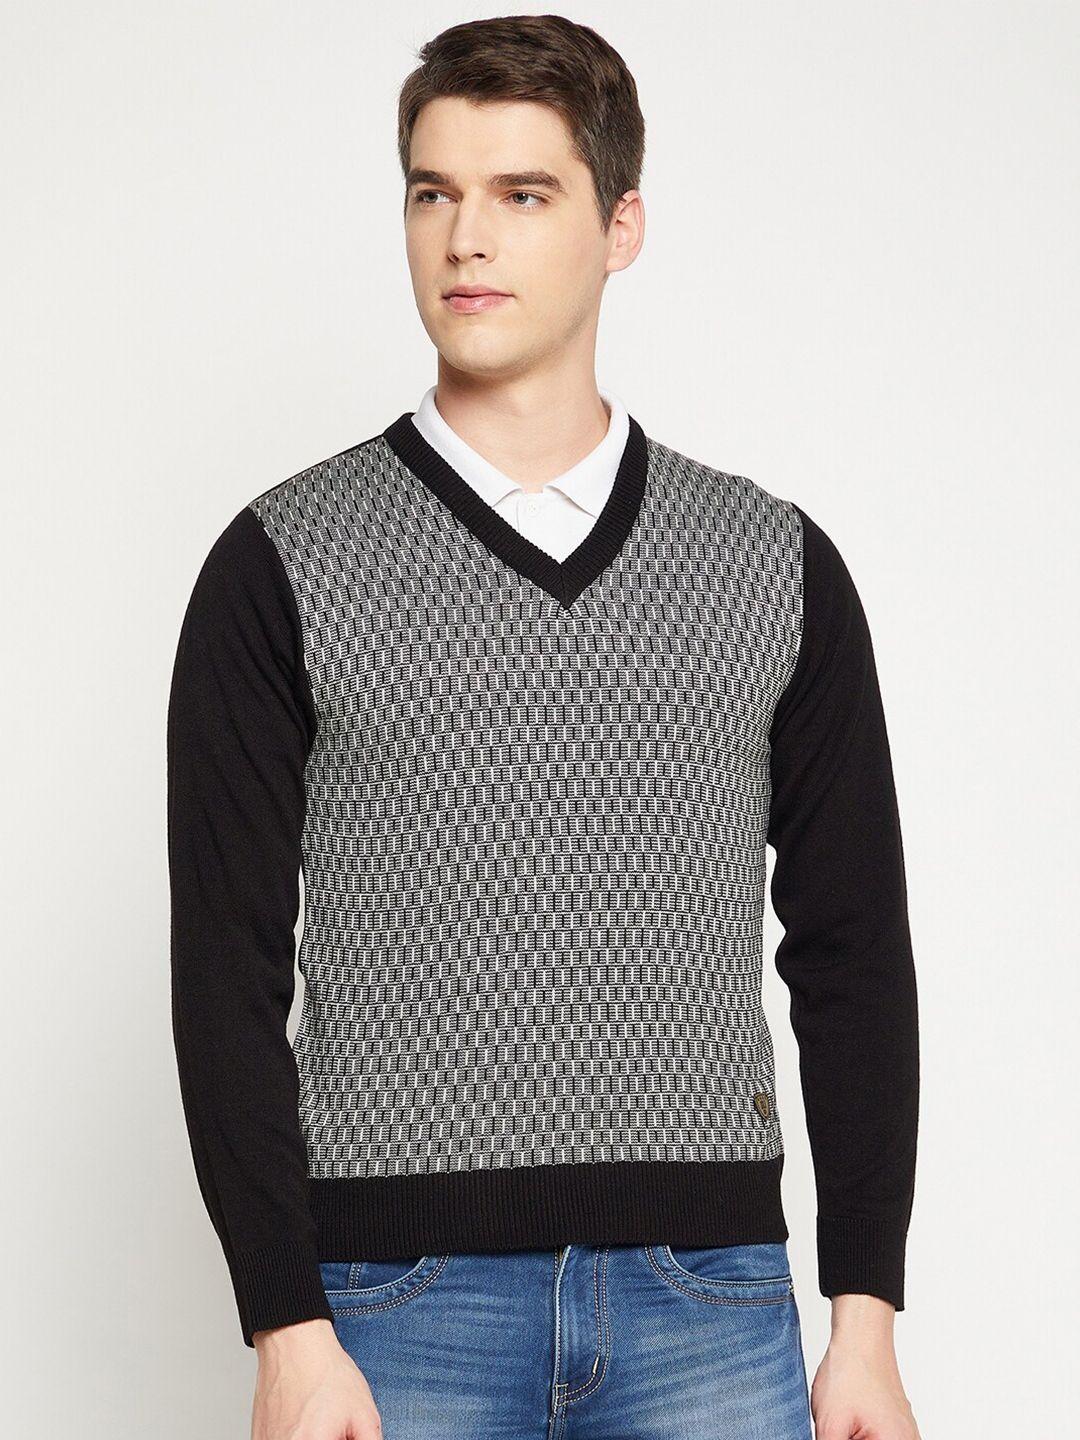 duke-men-black-&-white-printed-pullover